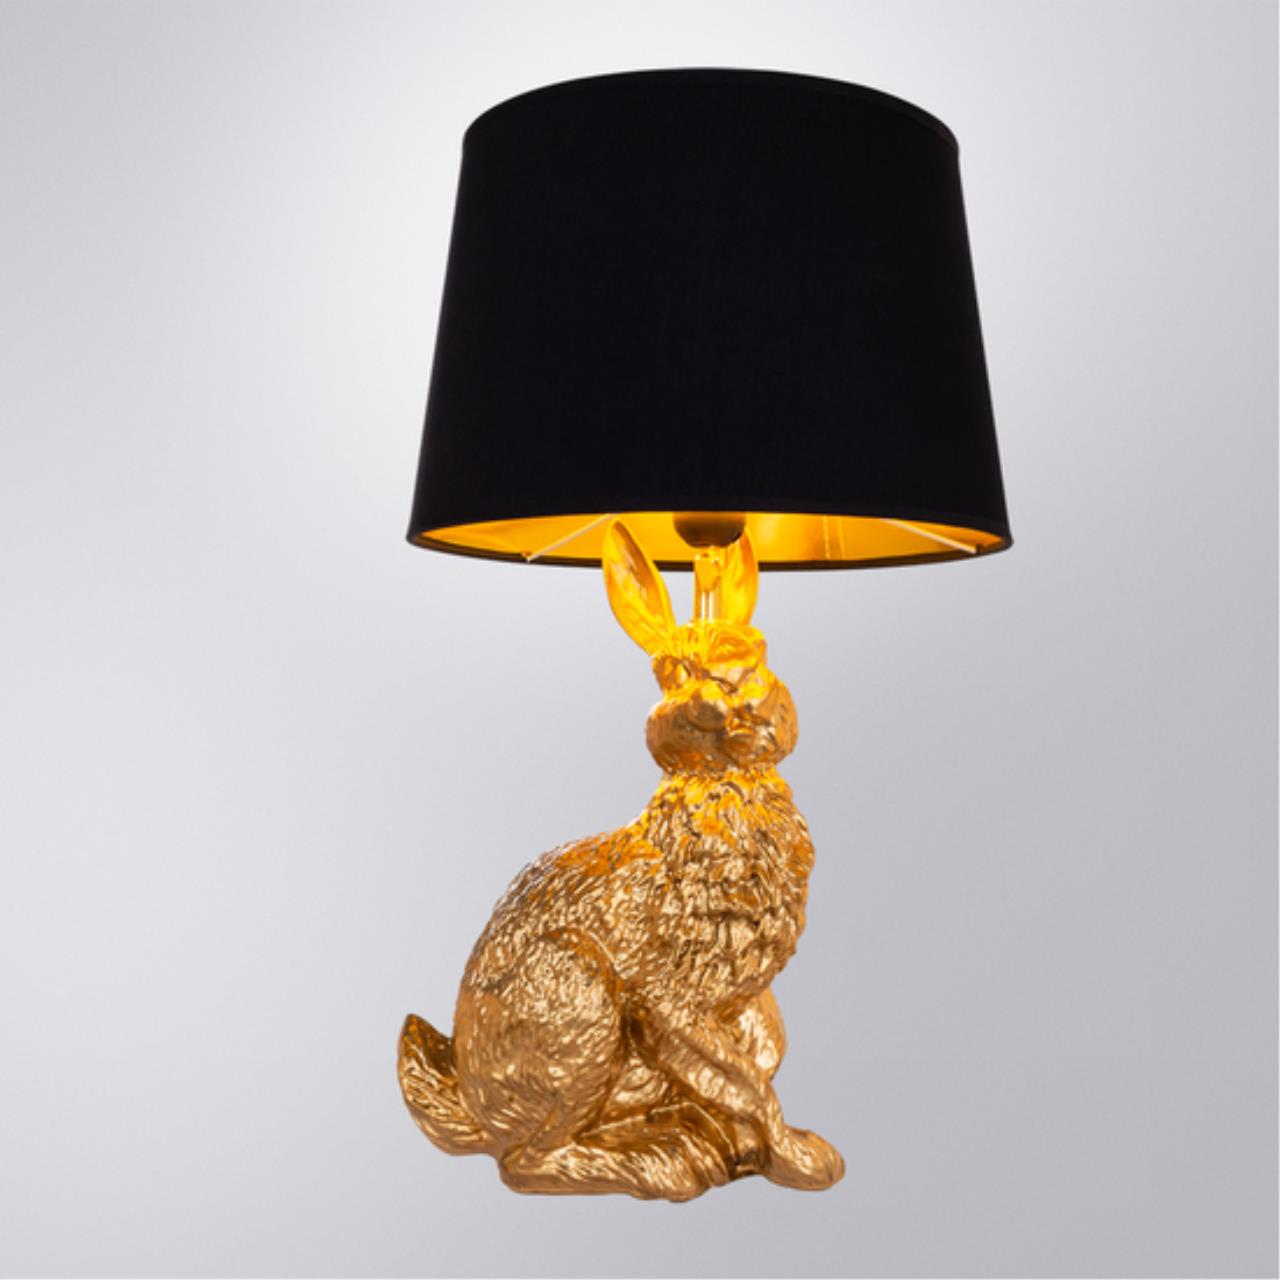 Интерьерная настольная лампа Arte lamp A4015LT-1GO СВЕТИЛЬНИК НАСТОЛЬНЫЙ